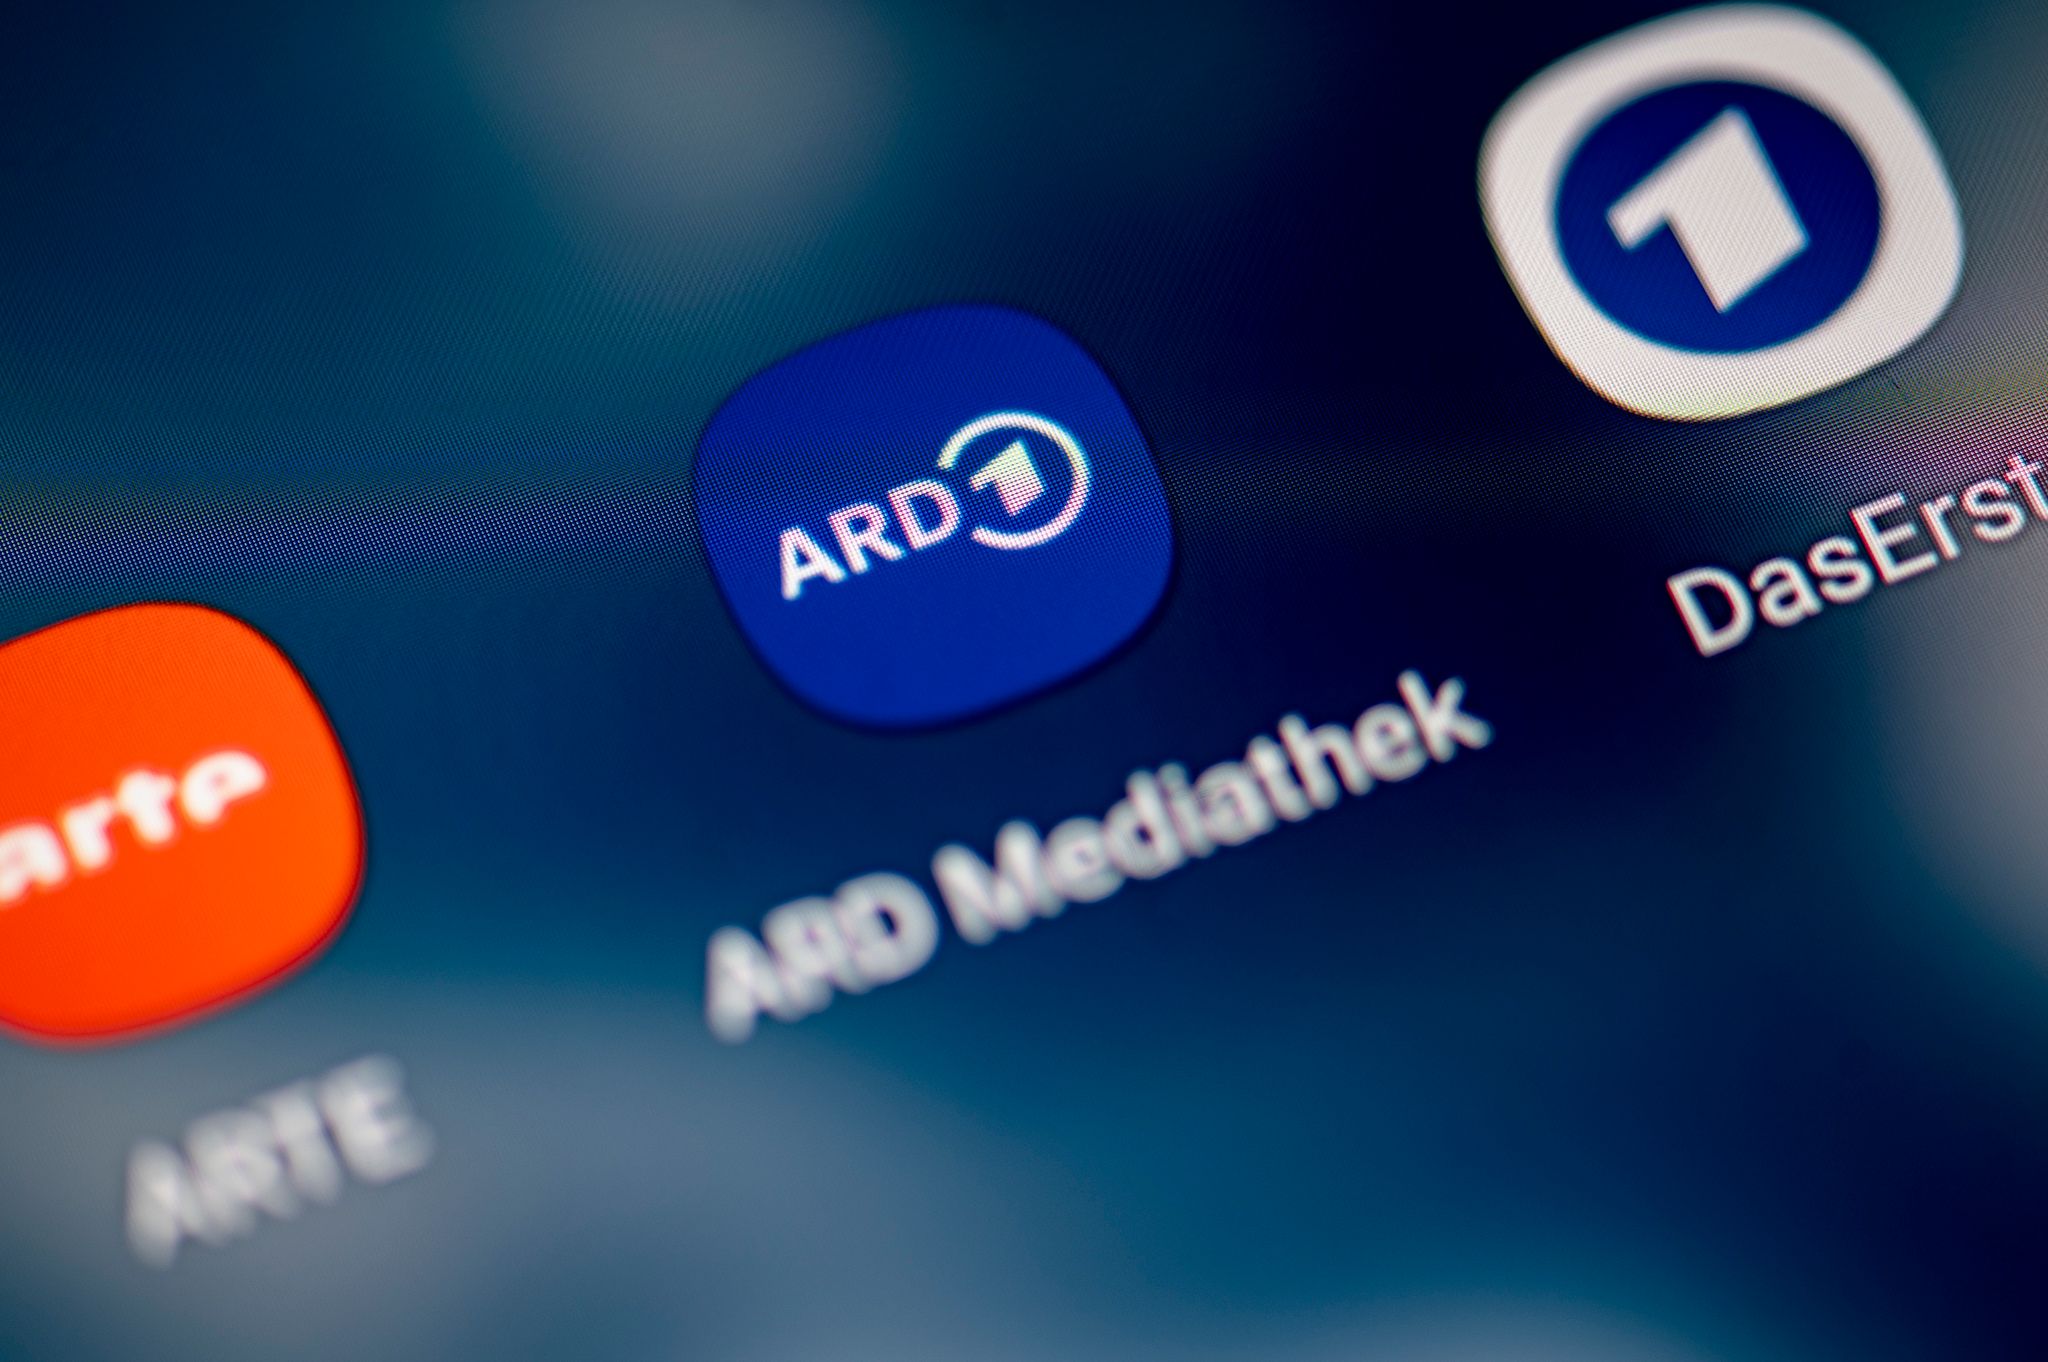 ard mediathek war 2023 erfolgreichste tv-streamingplattform